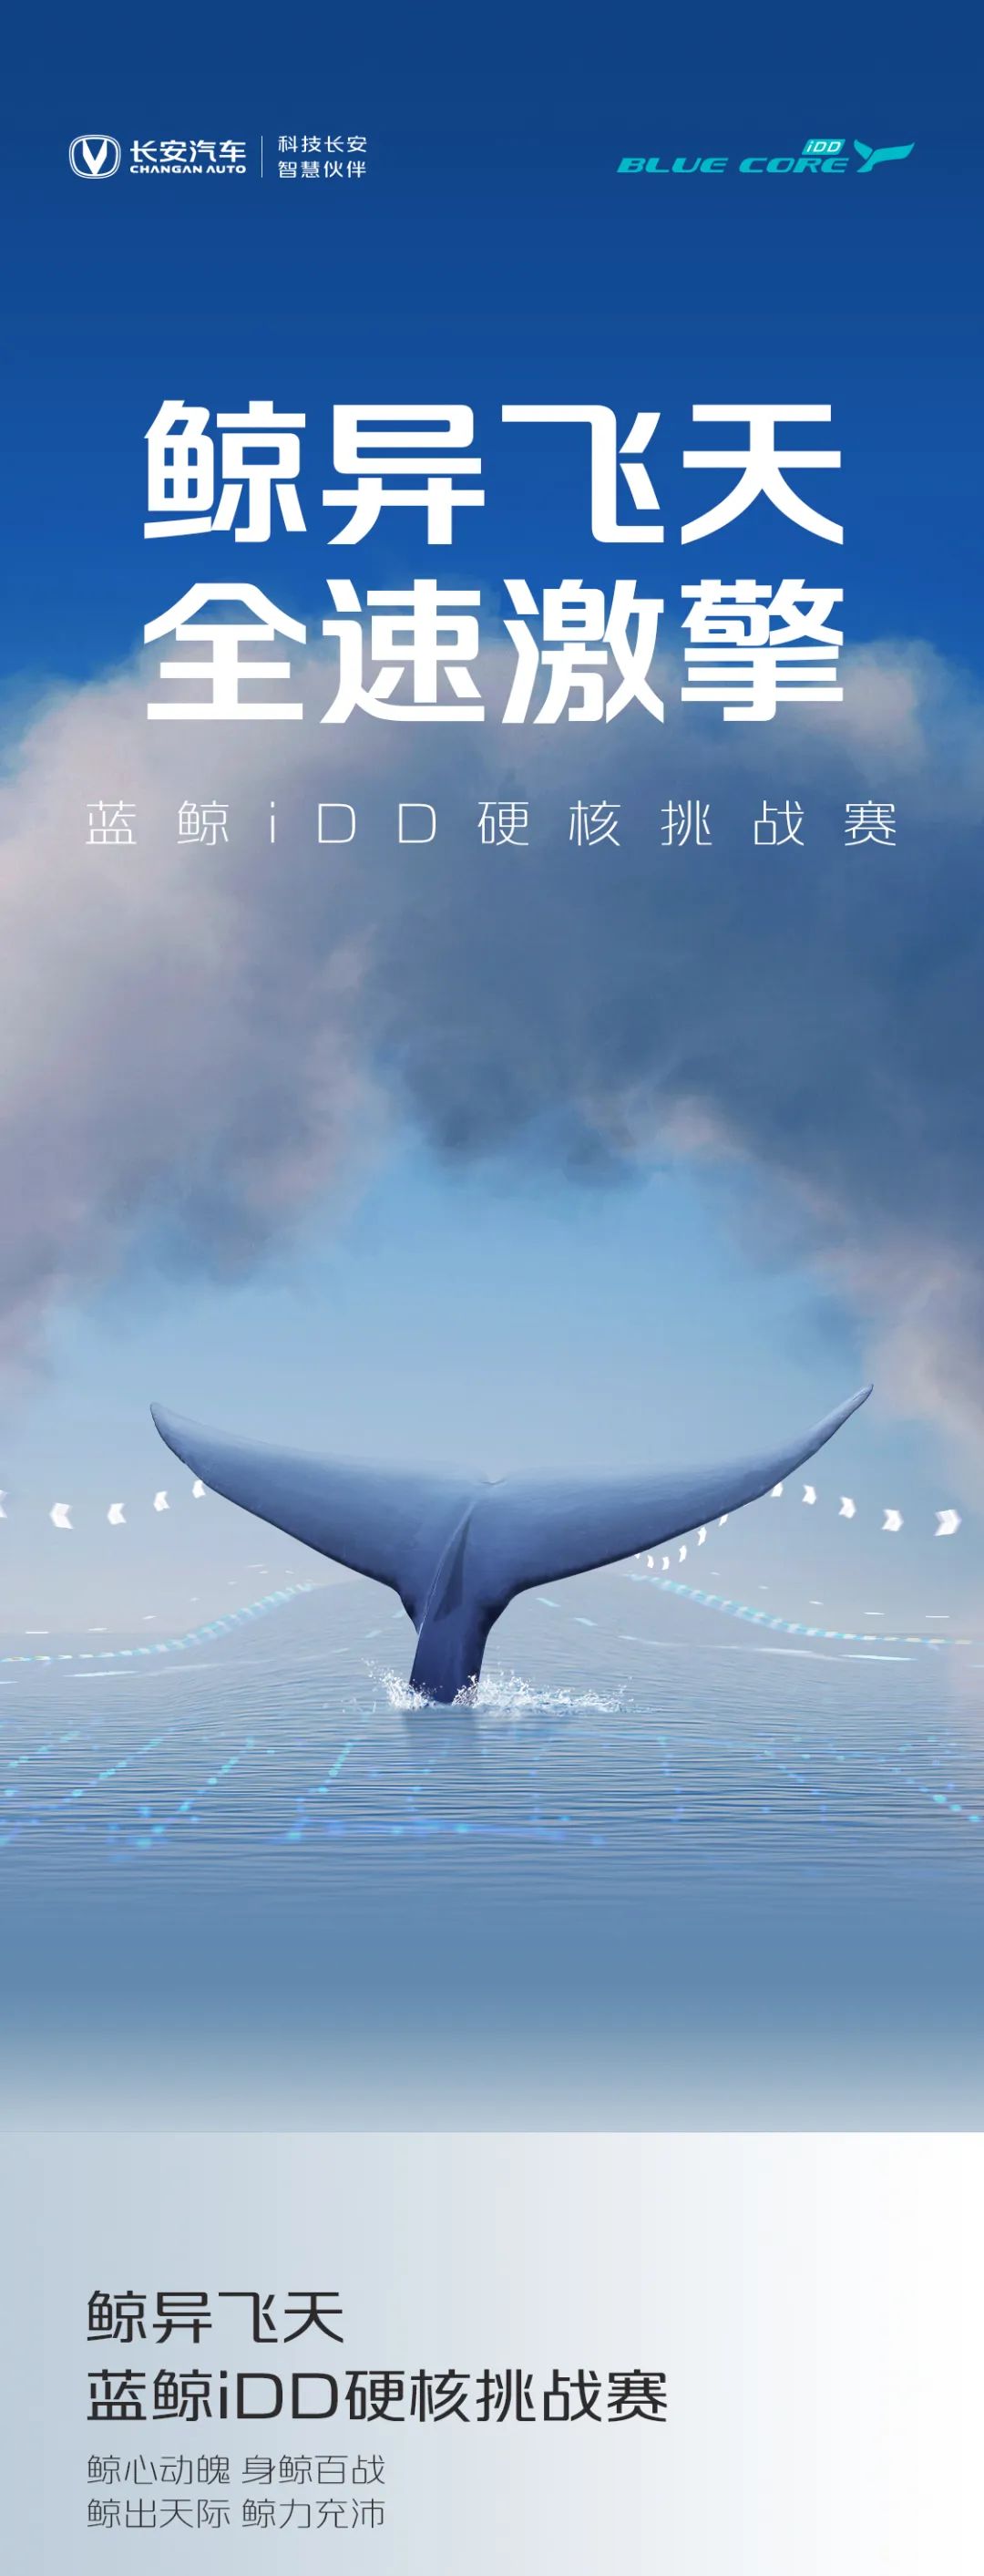 点击查看详细信息<br>标题：蓝鲸iDD硬核挑战赛丨高能无惧挑战 阅读次数：240